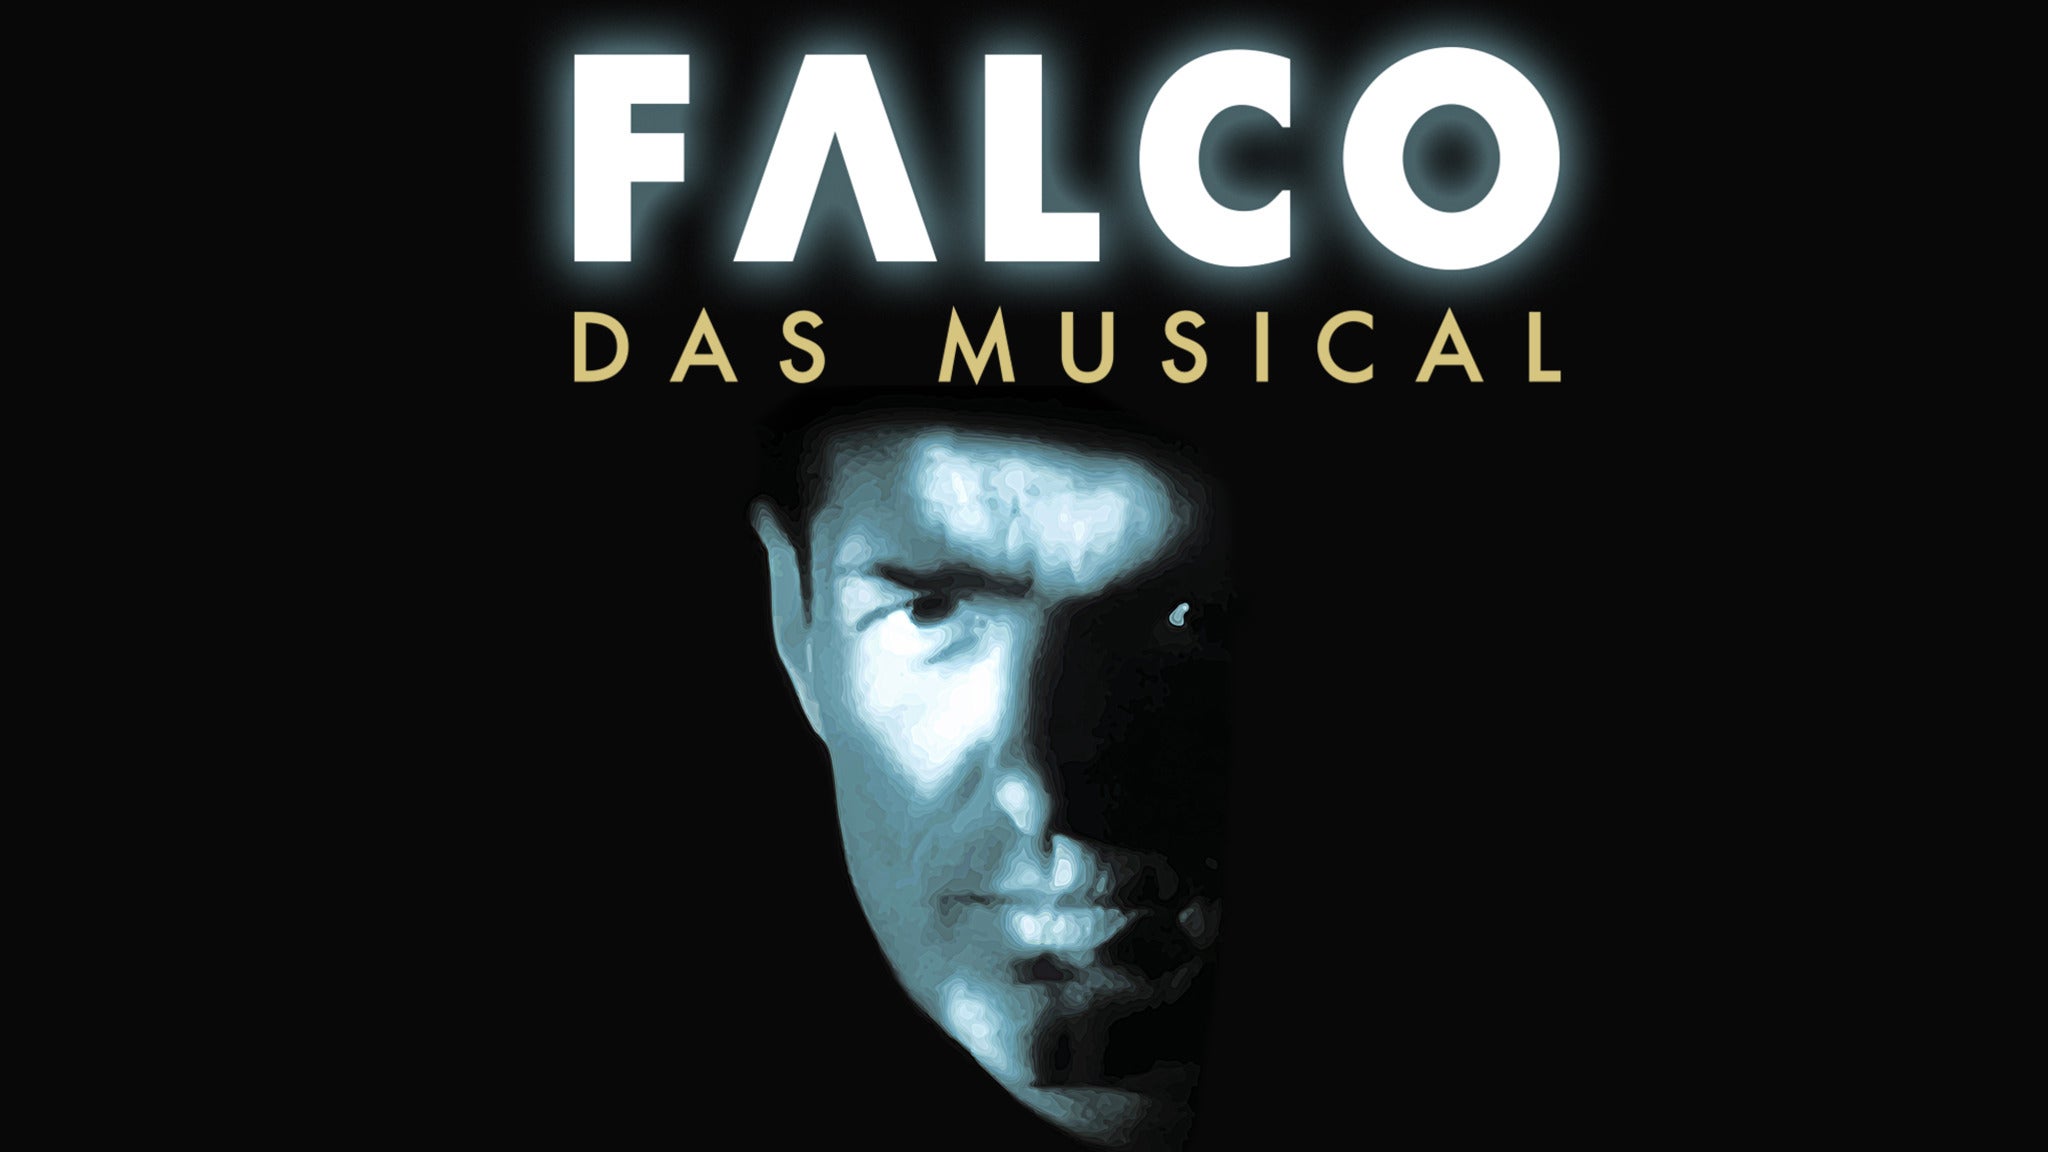 Falco Das Musical presale information on freepresalepasswords.com